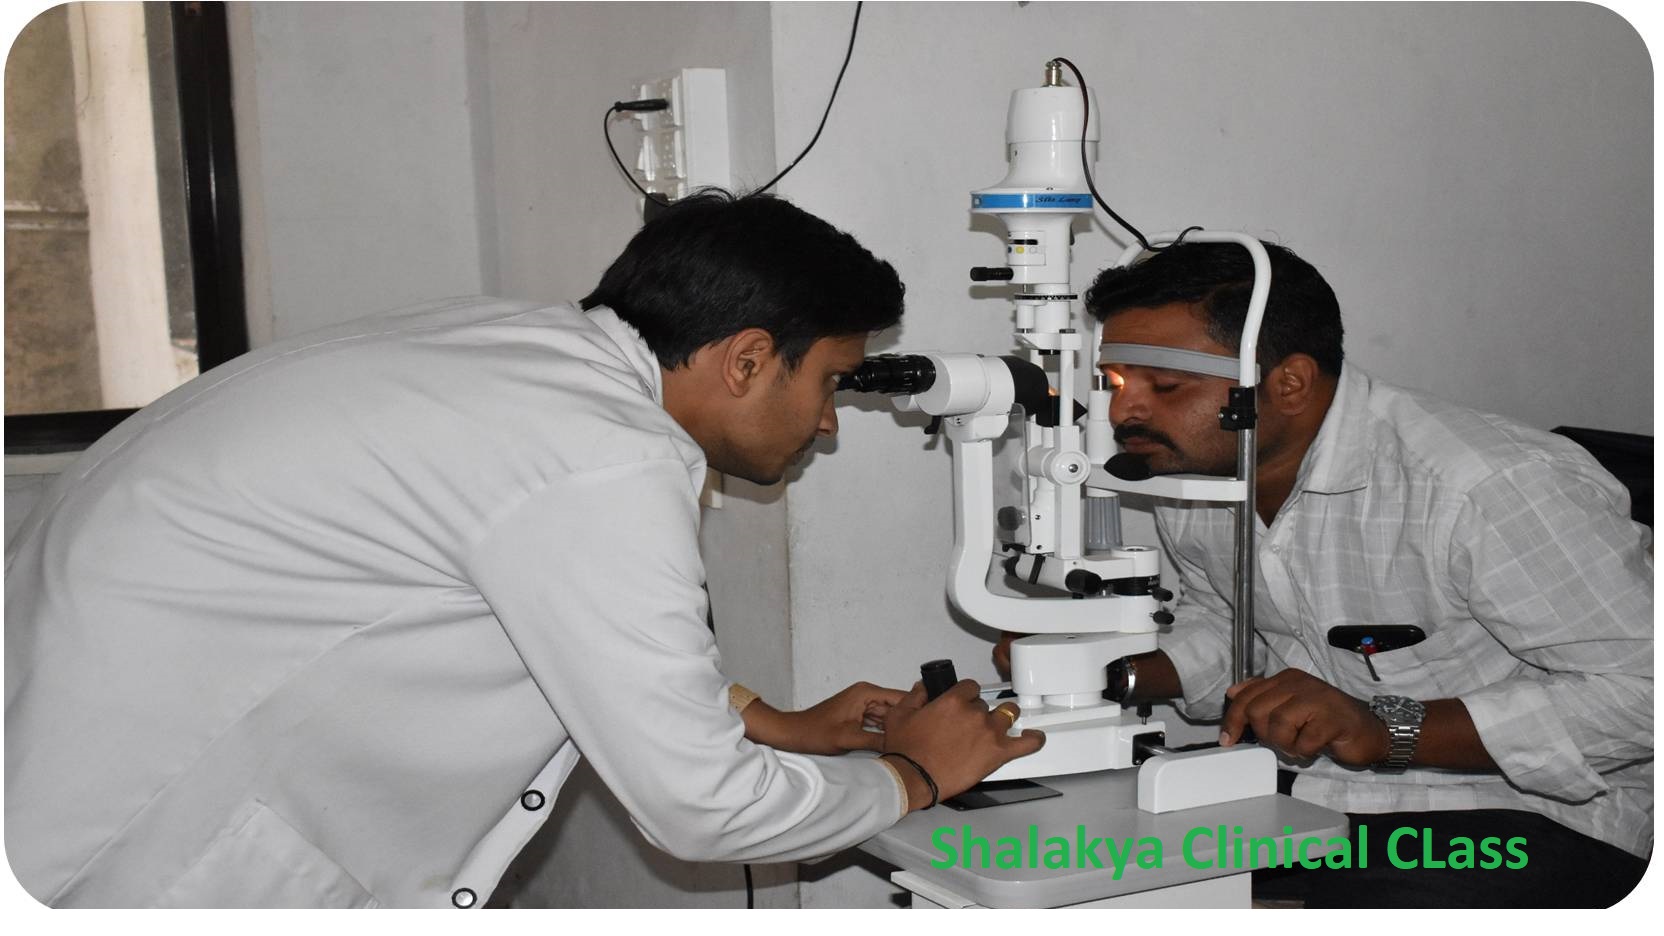 Clinical class Shalakya